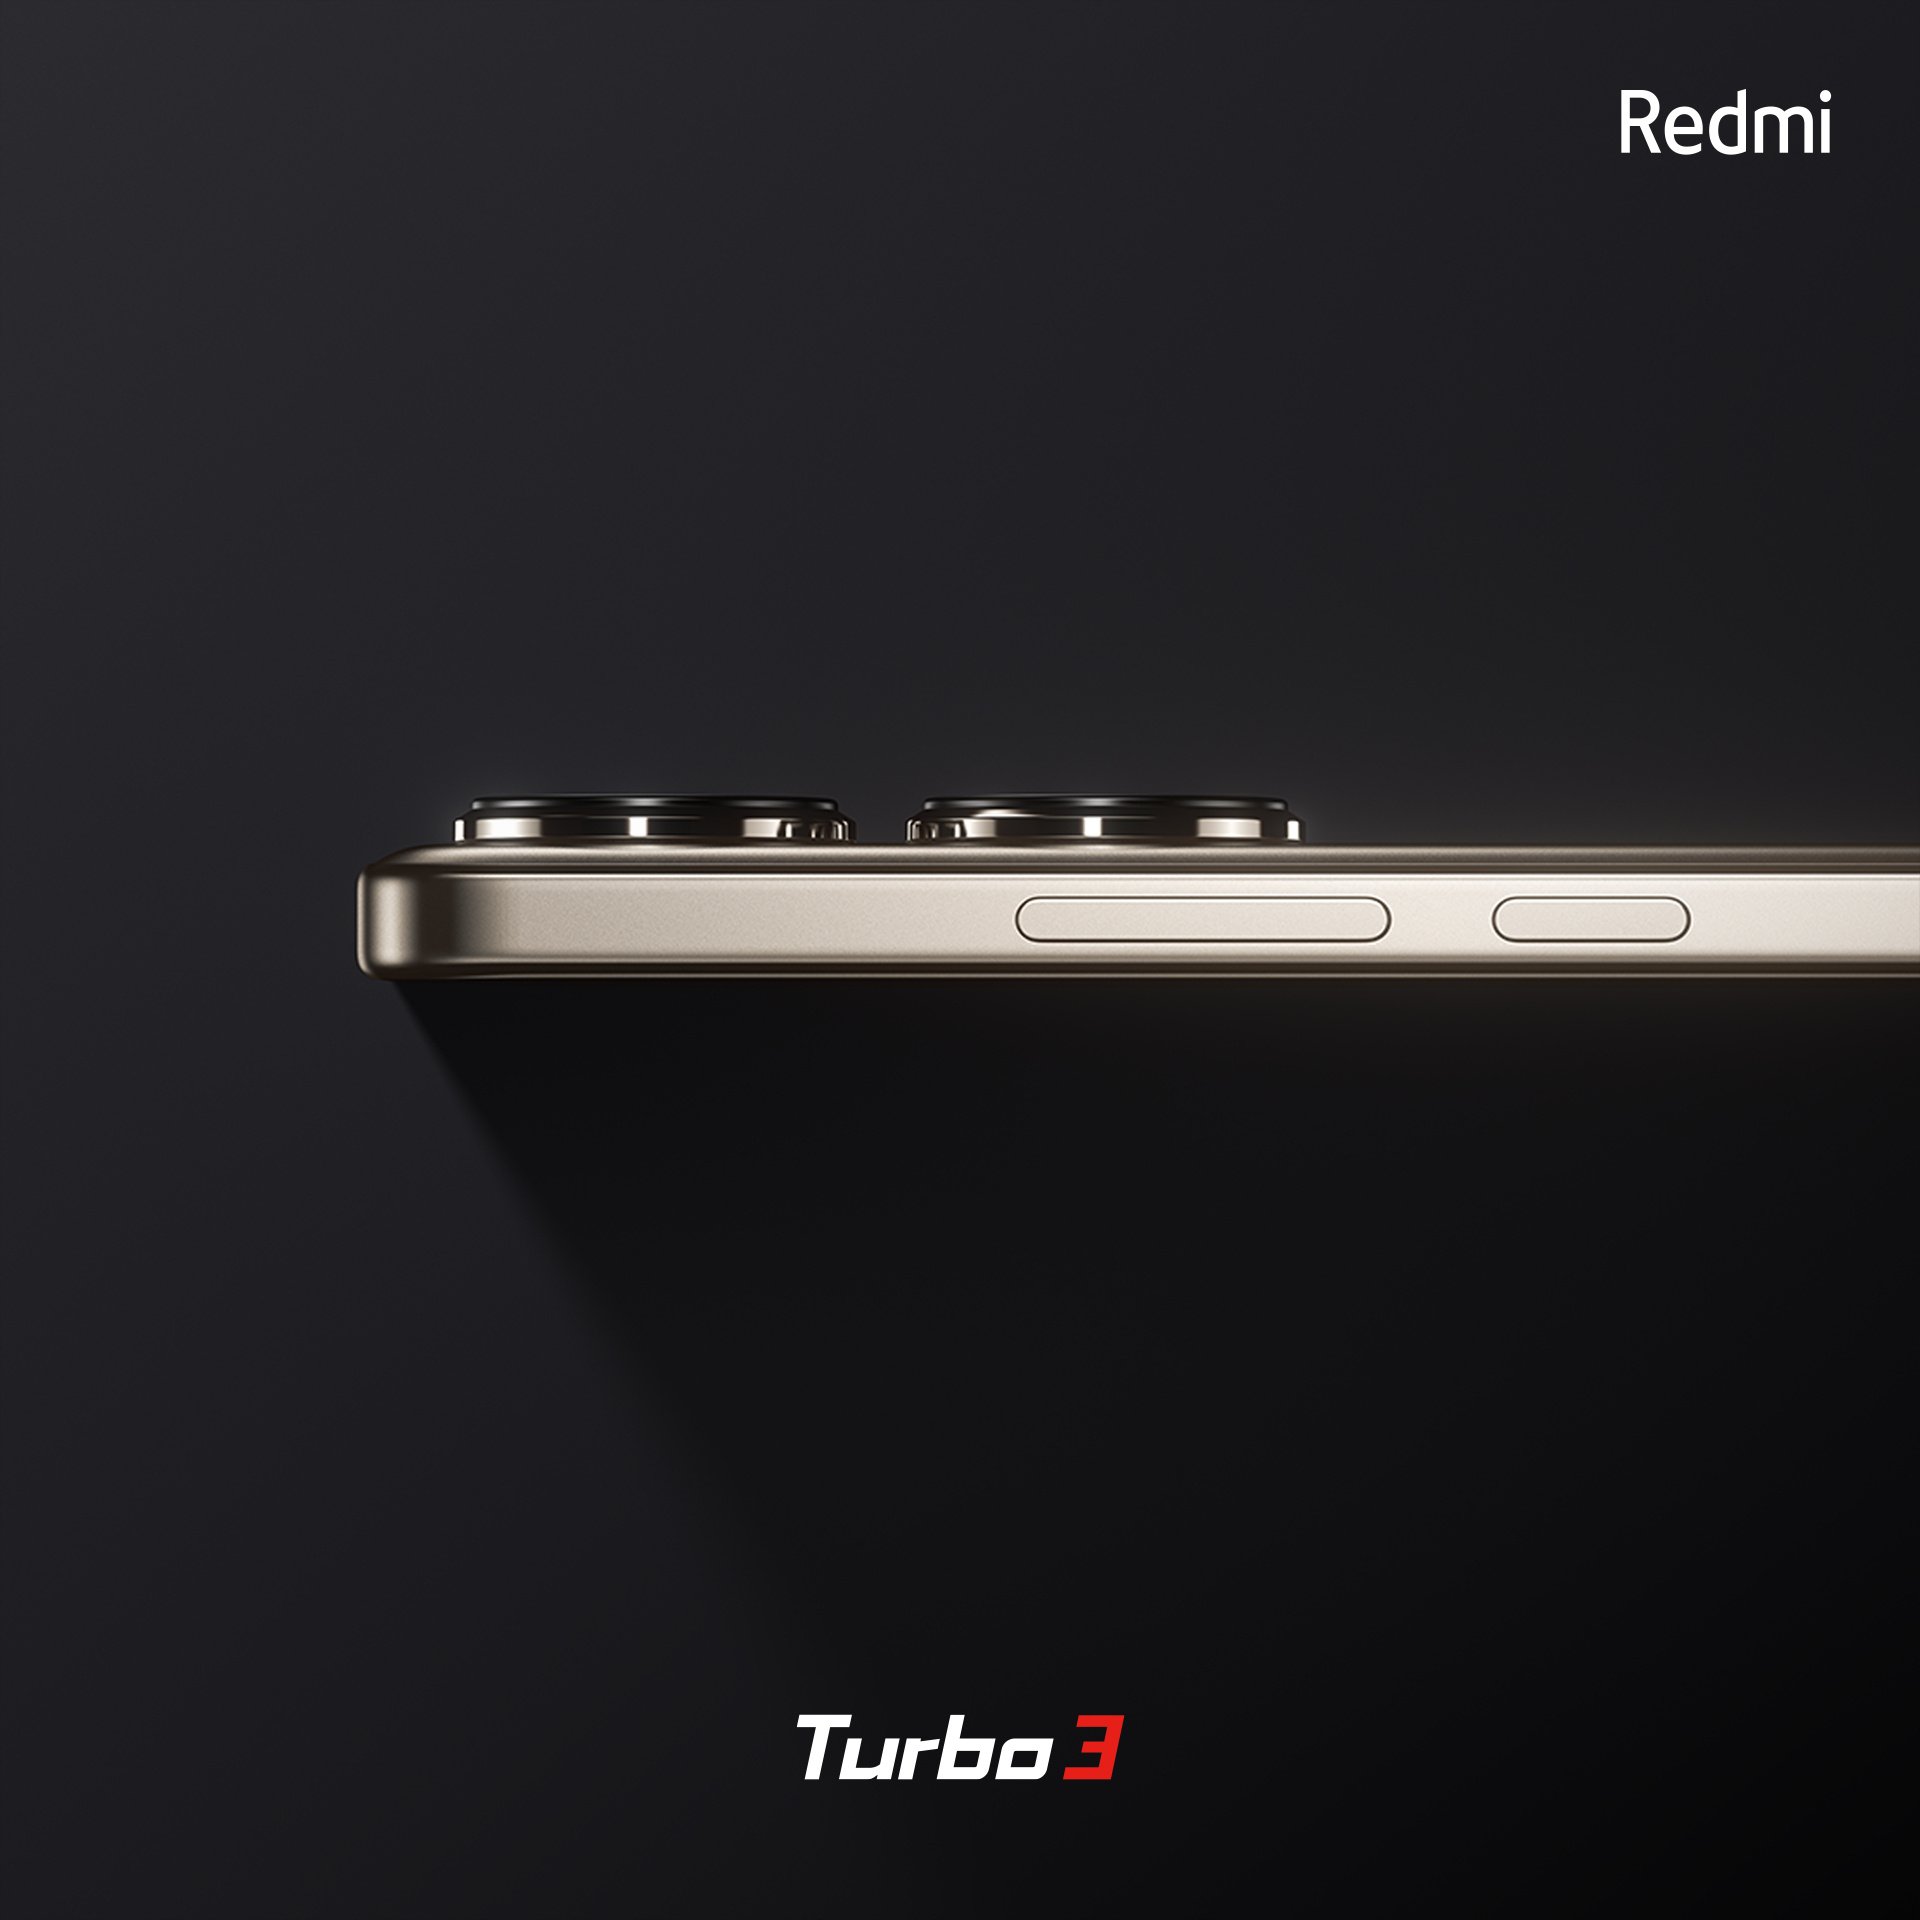 Redmi Turbo 3 images